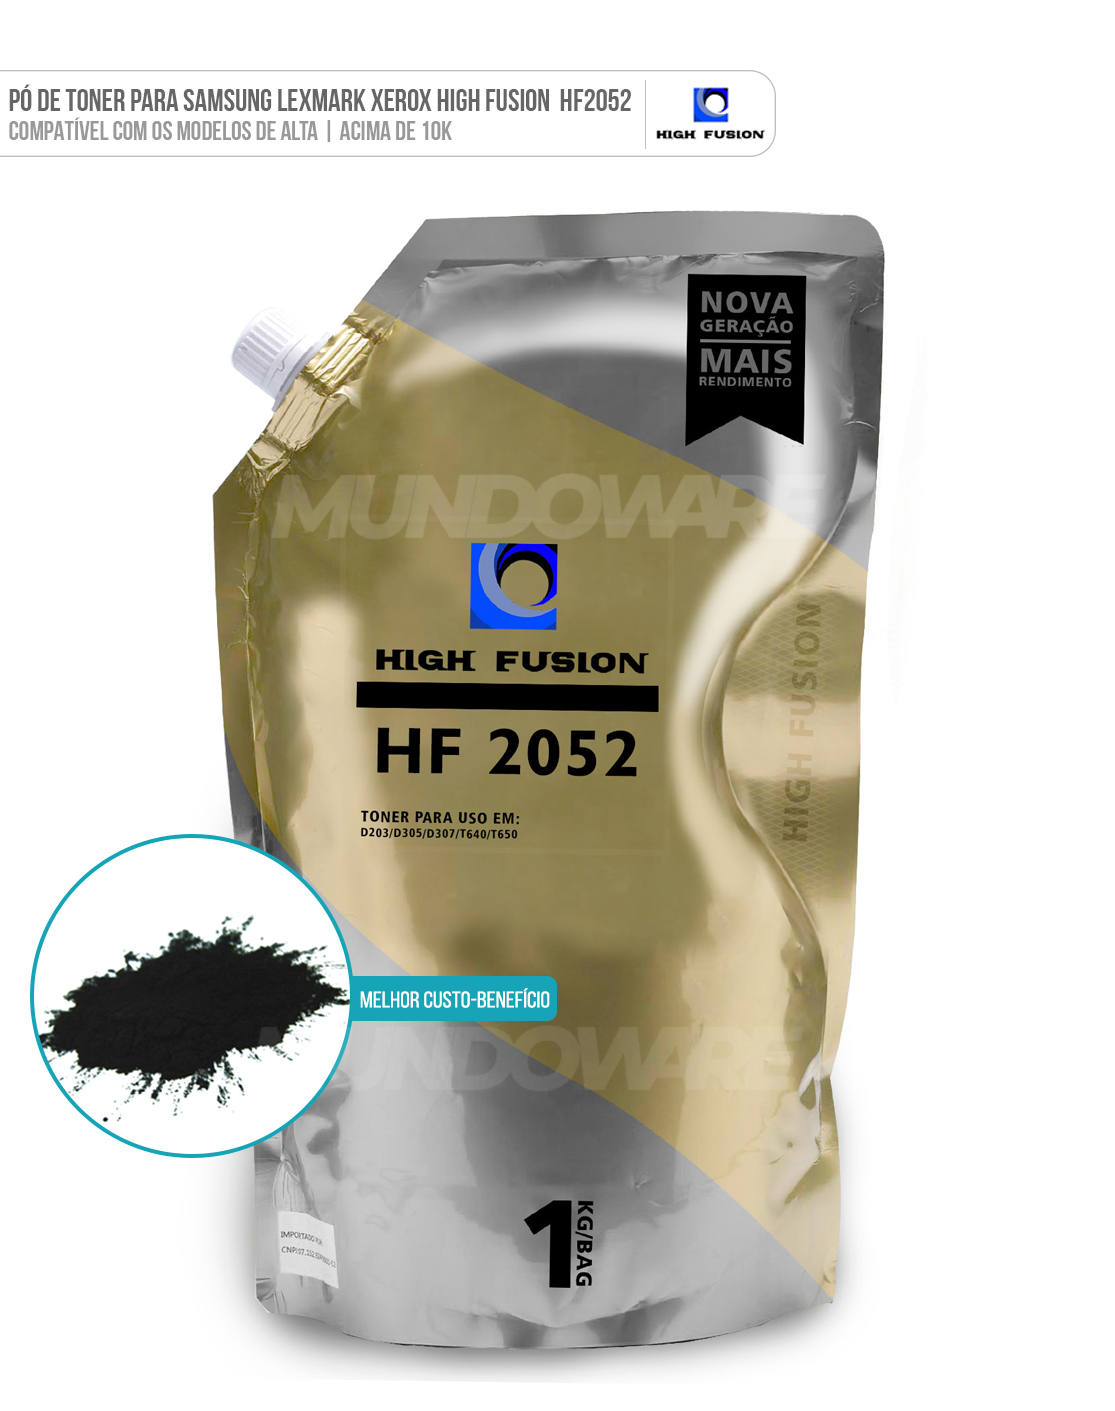 P de Toner High Fusion HF2052 HF 2052 Compatvel para Samsung Lexmark Universal de Alta (acima de 10K) Preto Bag 1 kg